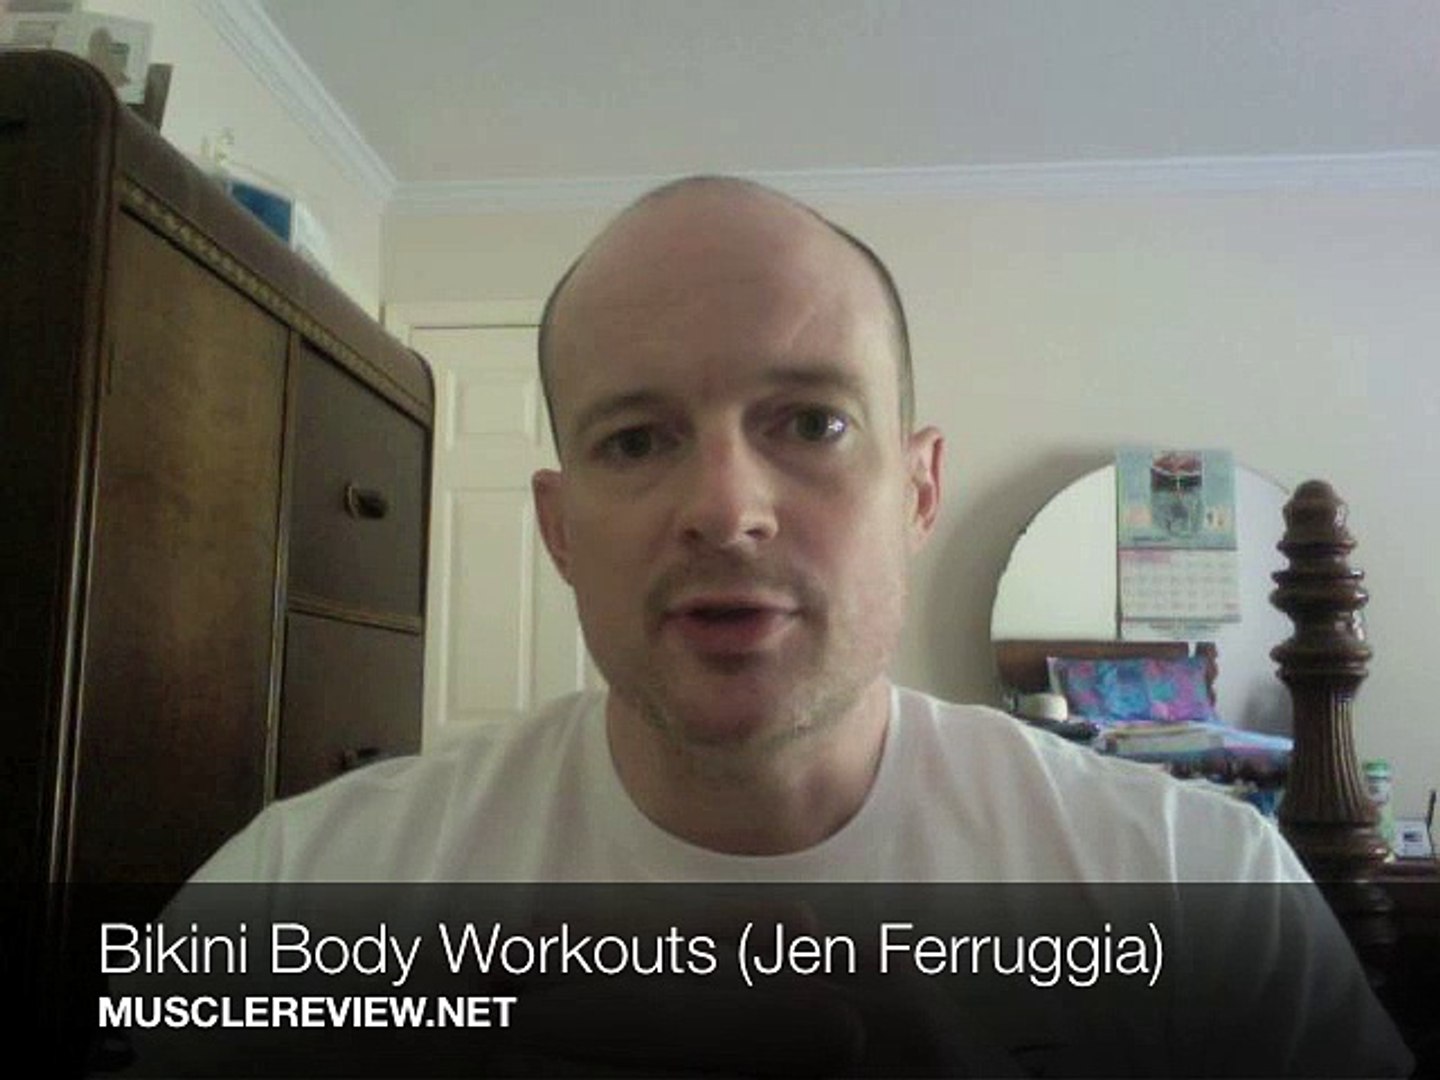 Bikini Body Workouts Review Jen Ferruggia - video Dailymotion